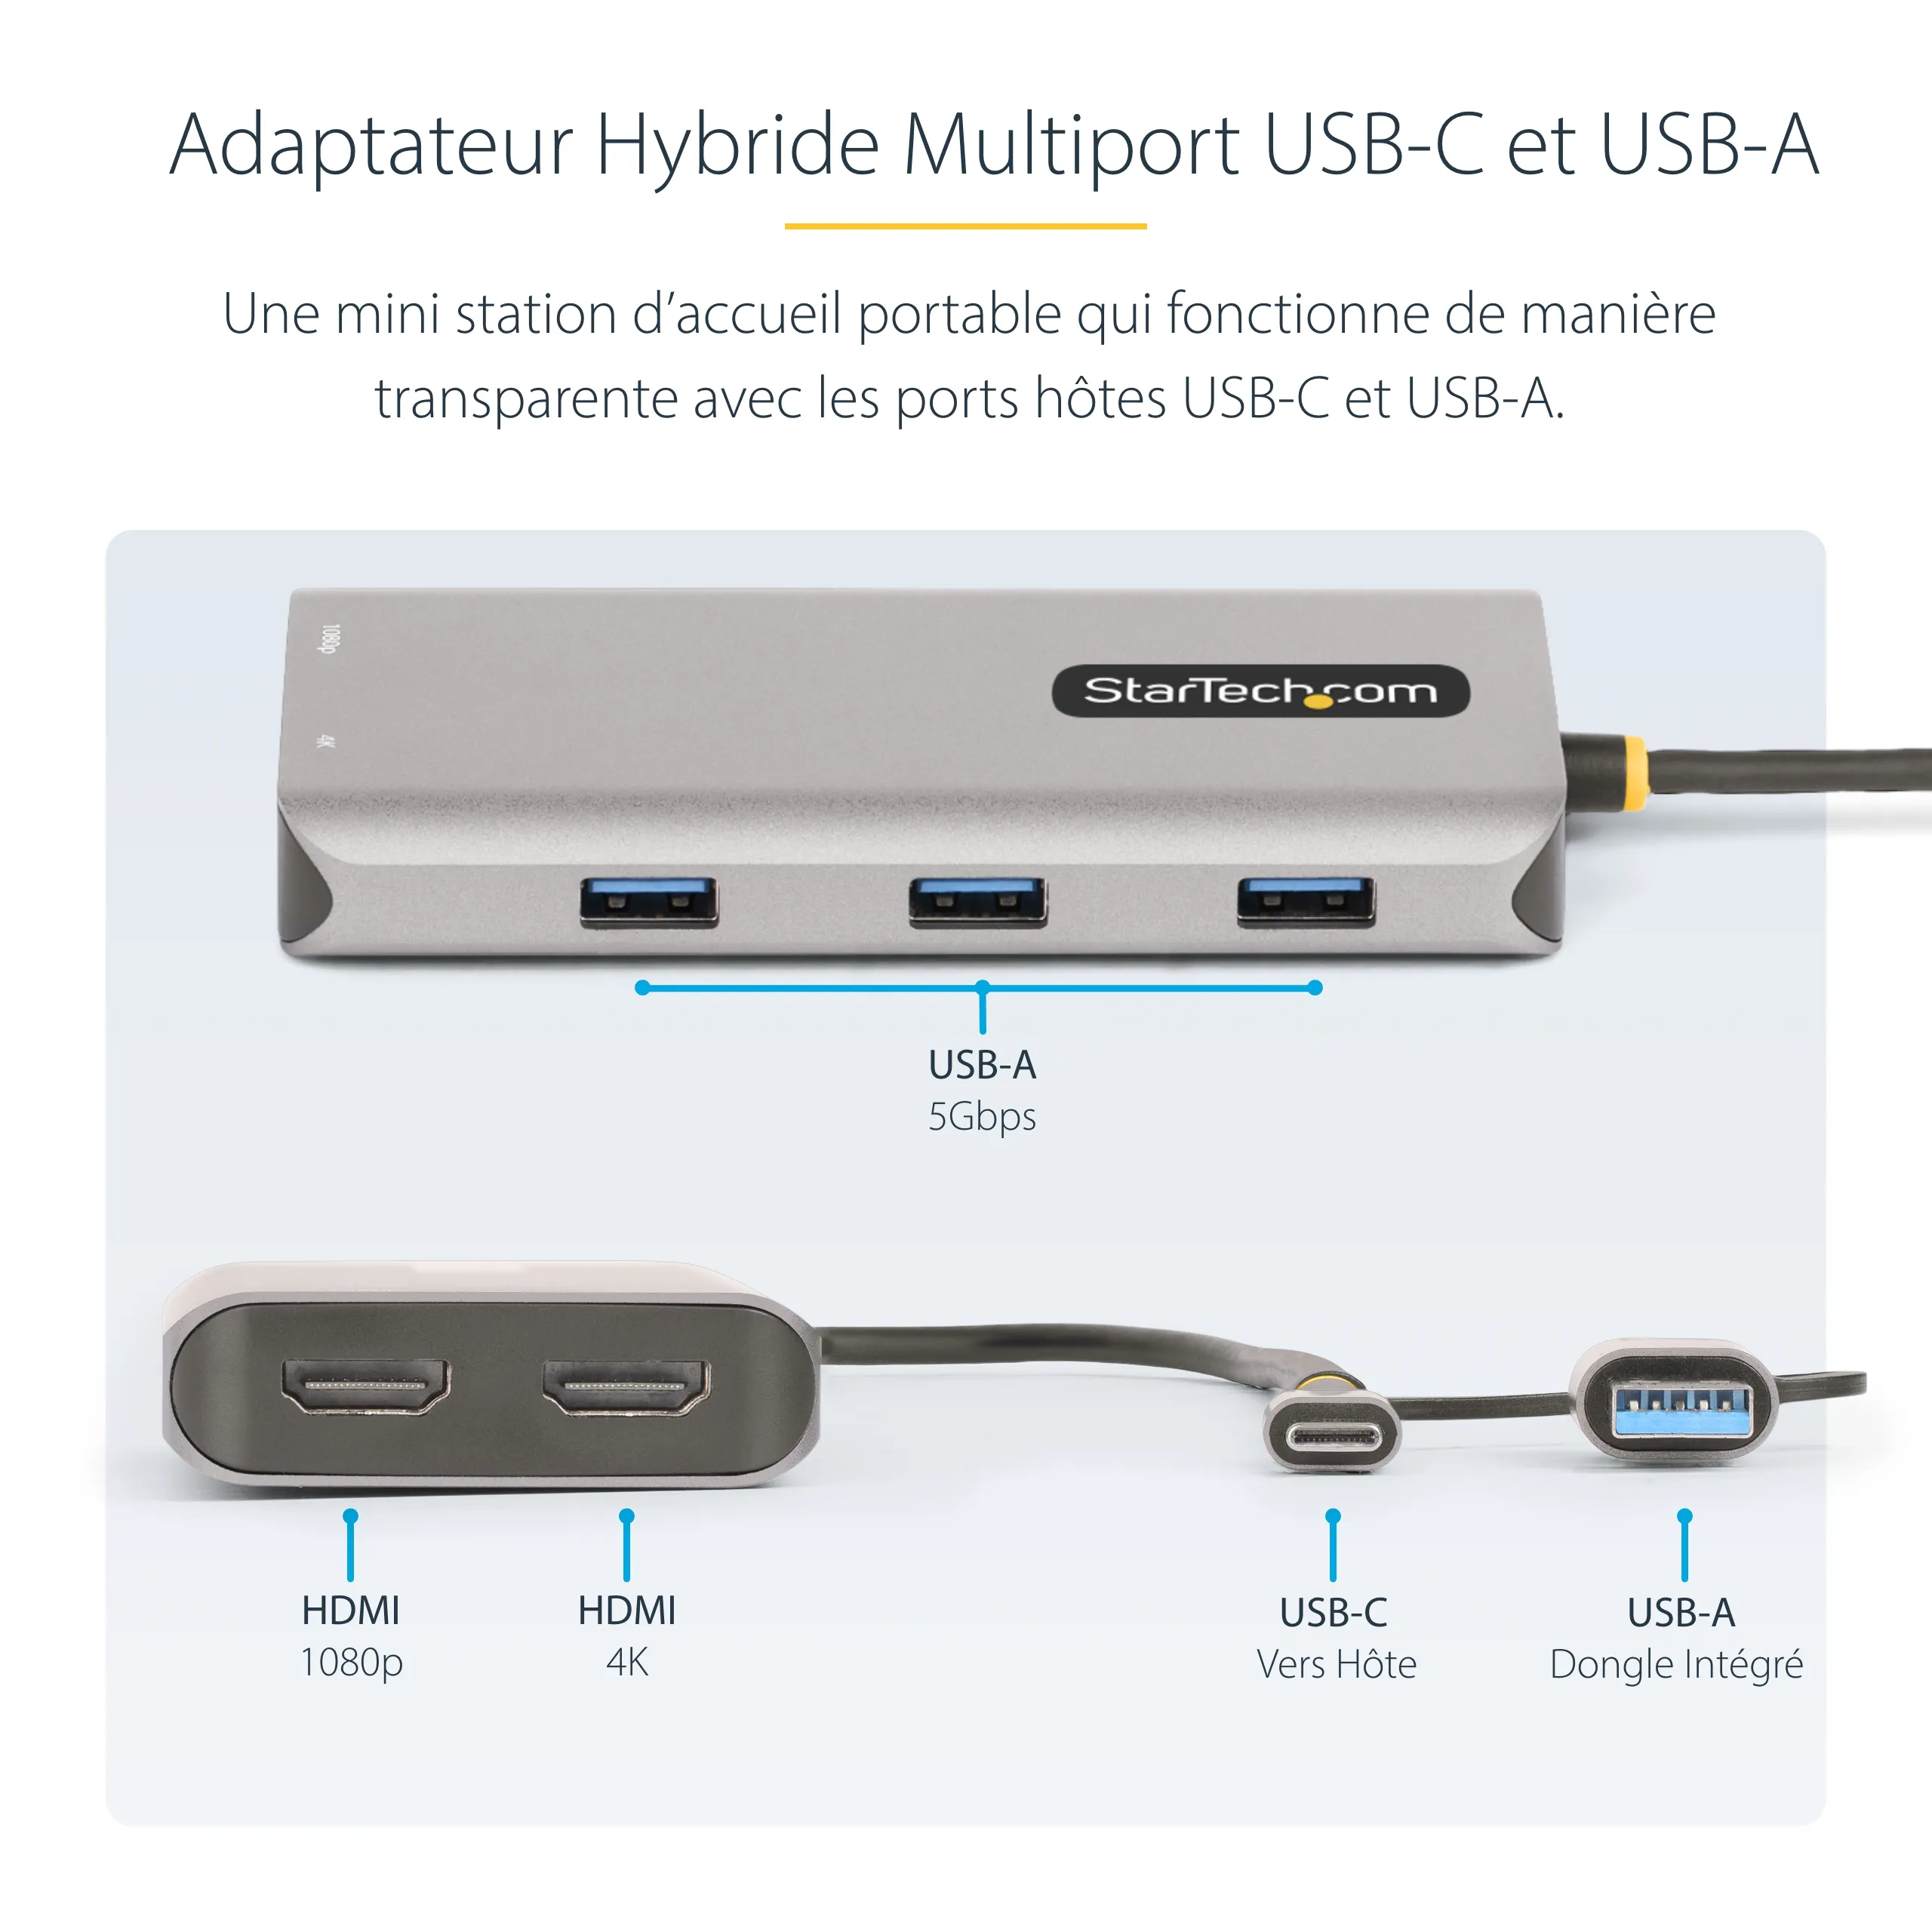 Vente StarTech.com Adaptateur Multiport USB-C avec Dongle USB StarTech.com au meilleur prix - visuel 10